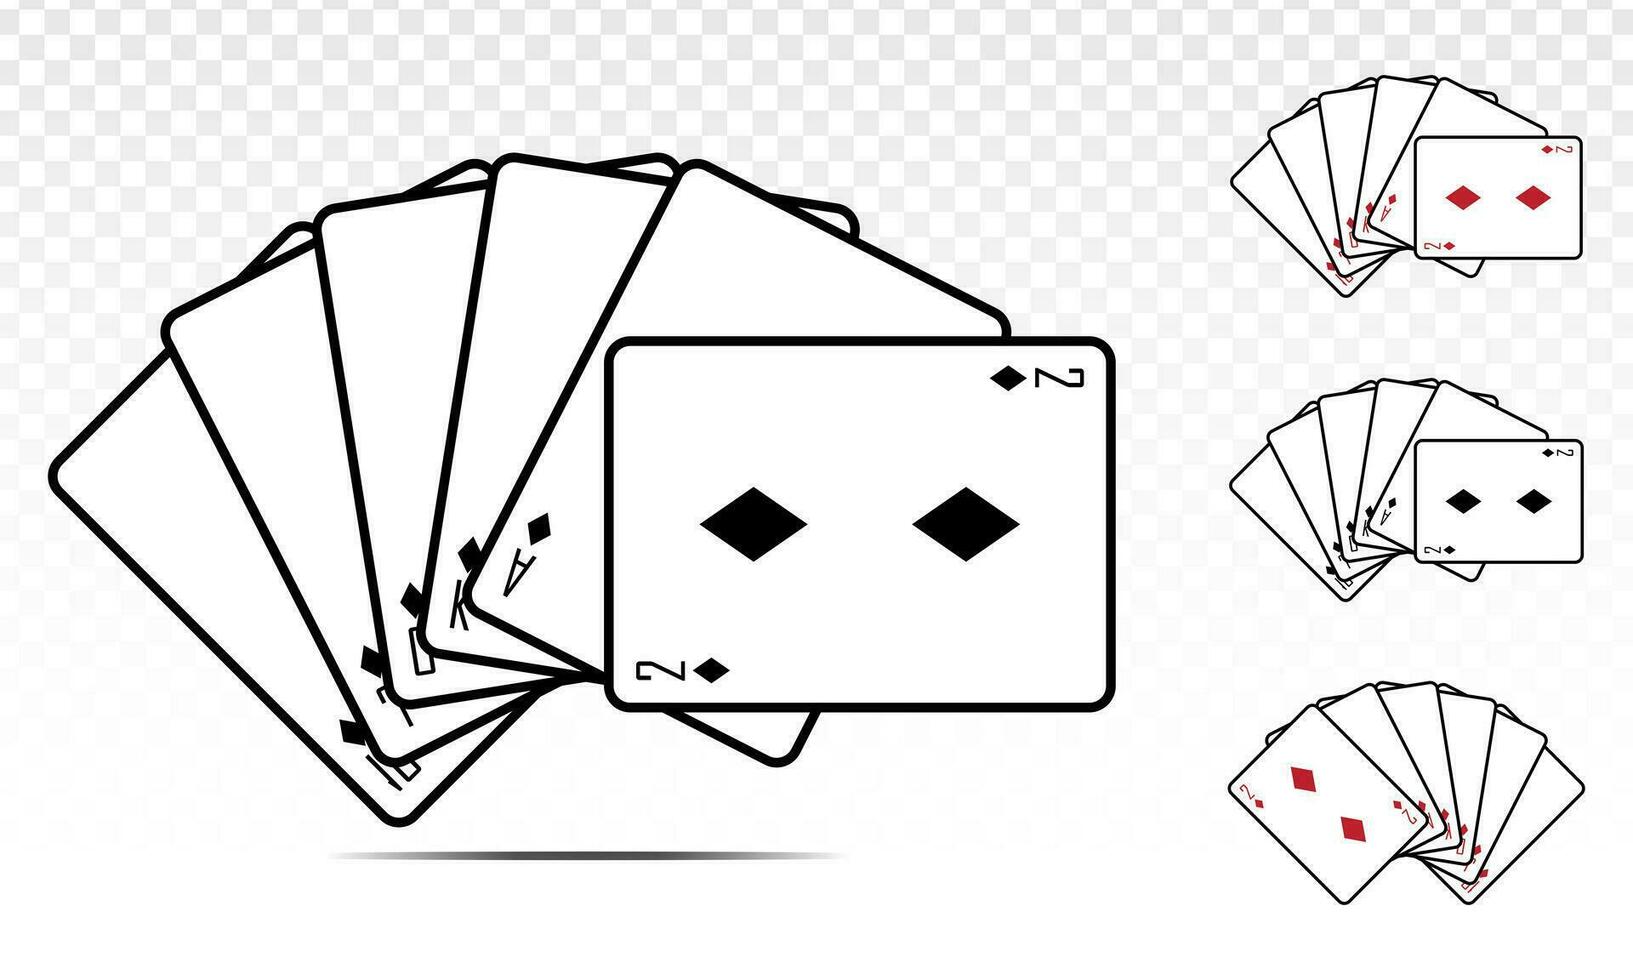 dritto sciacquone diamante poker carta. piatto vettore icona per casinò applicazioni e siti web